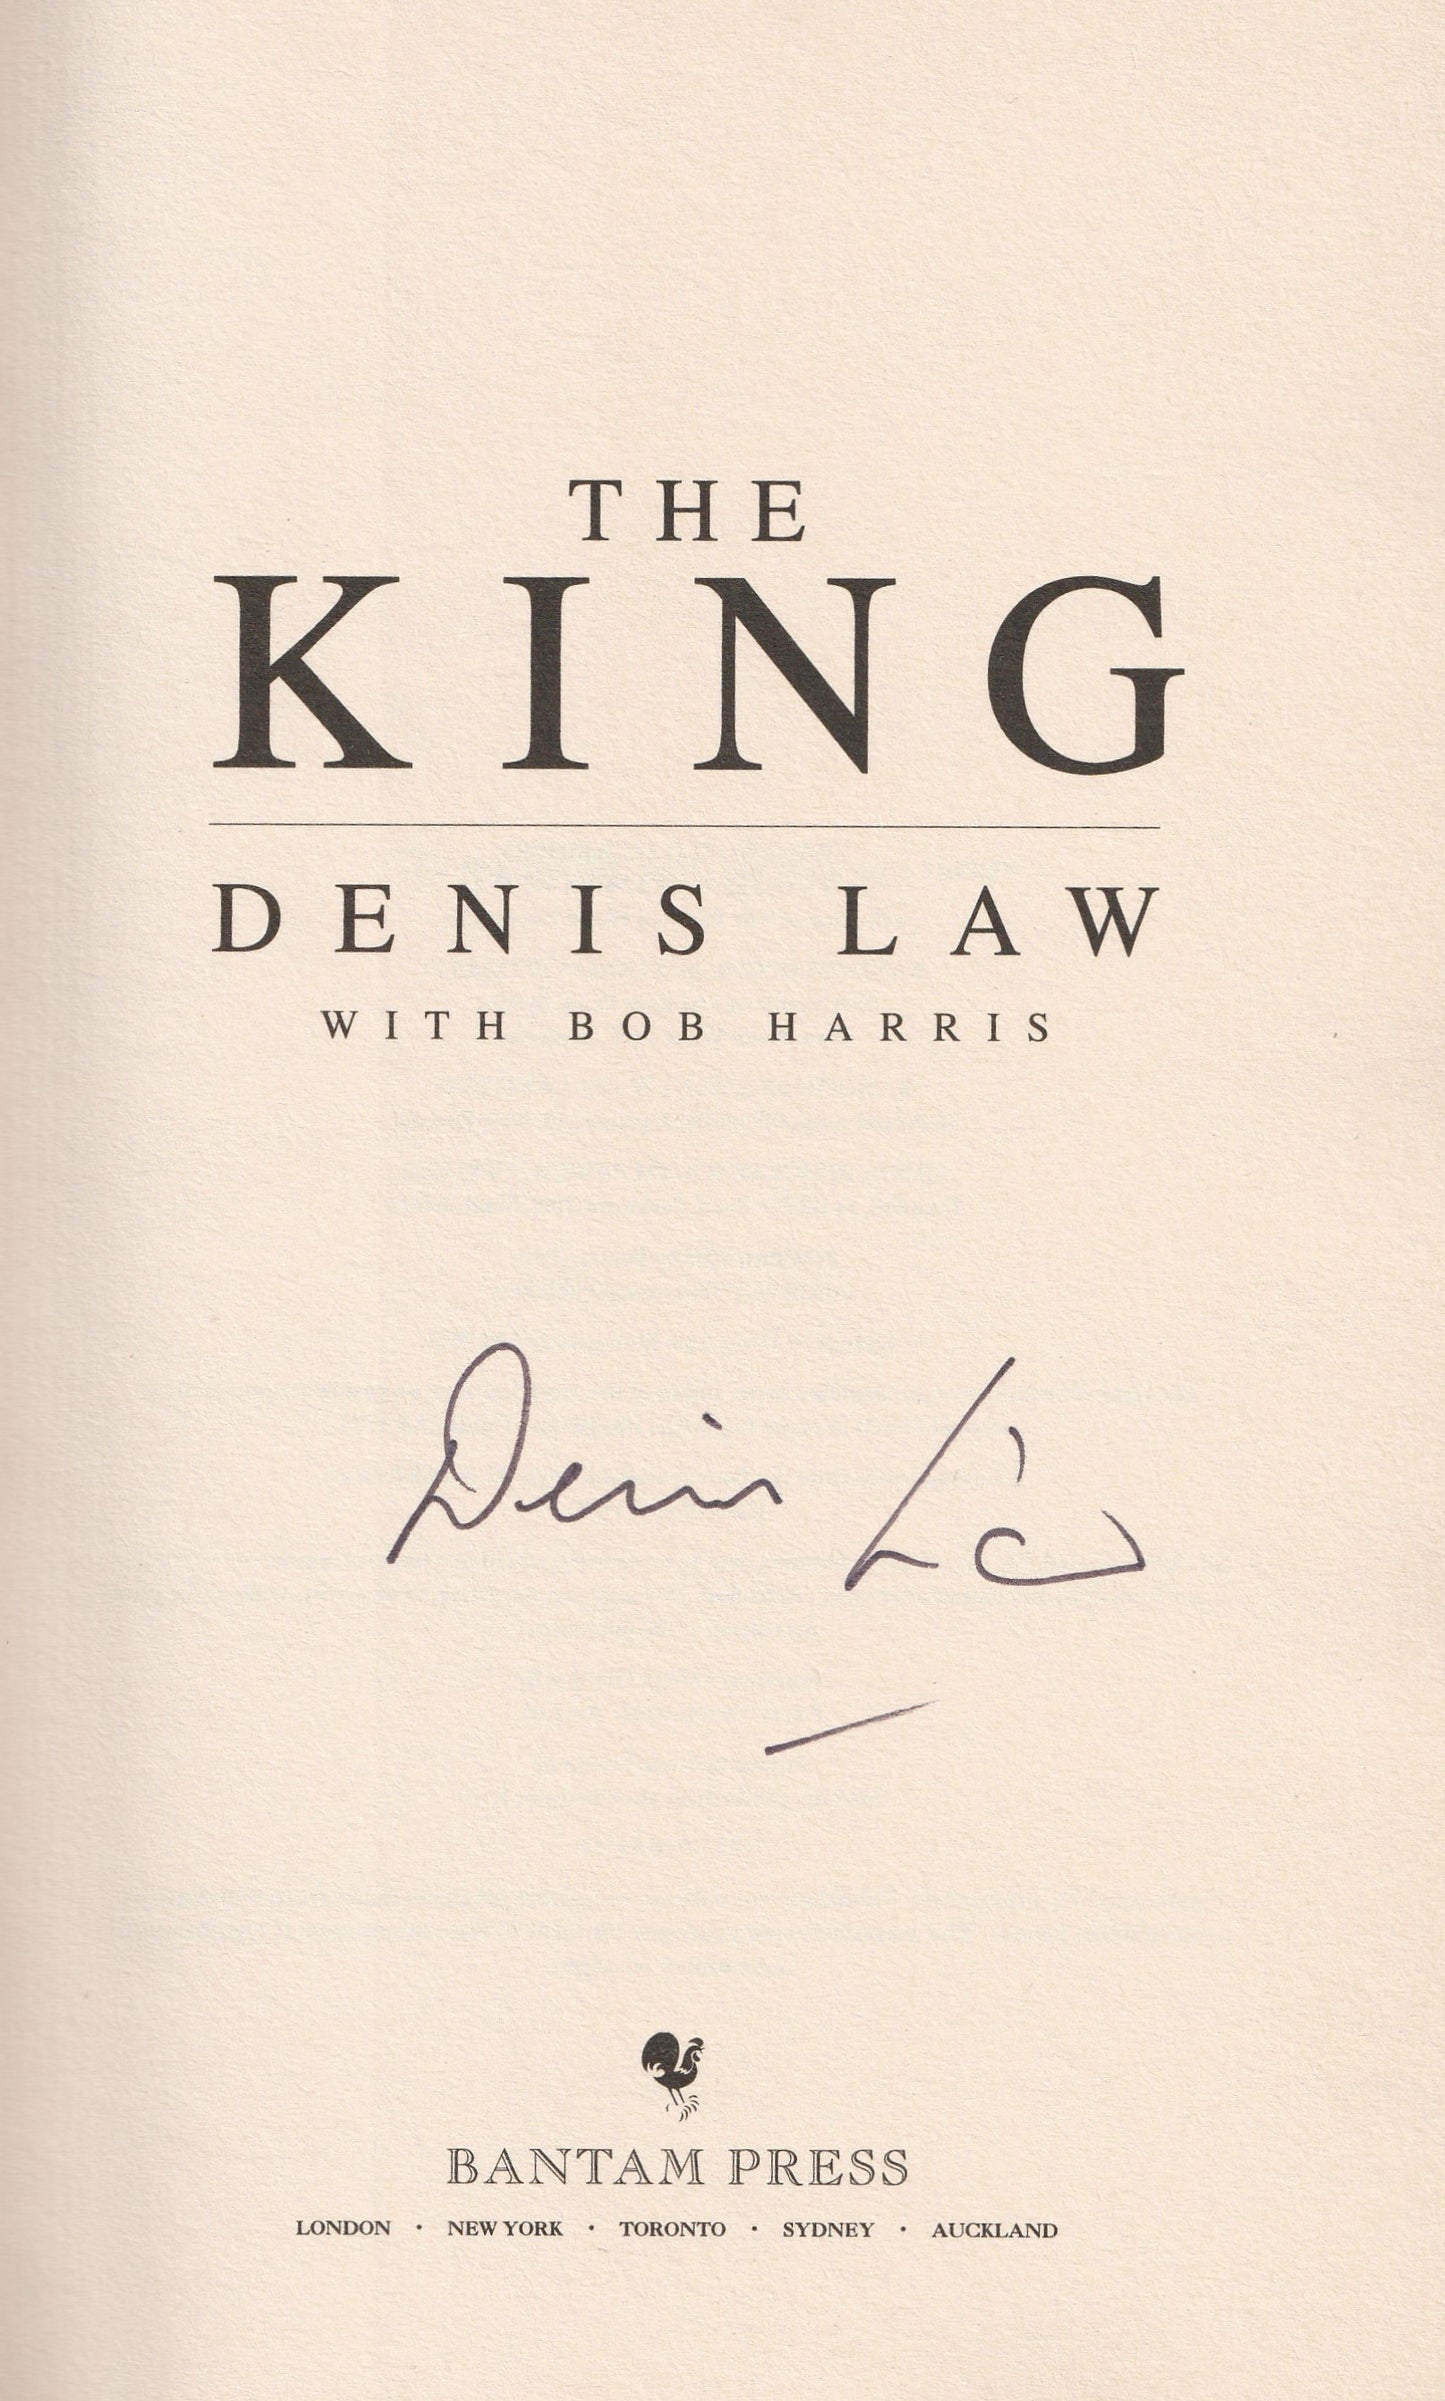 Denis Law